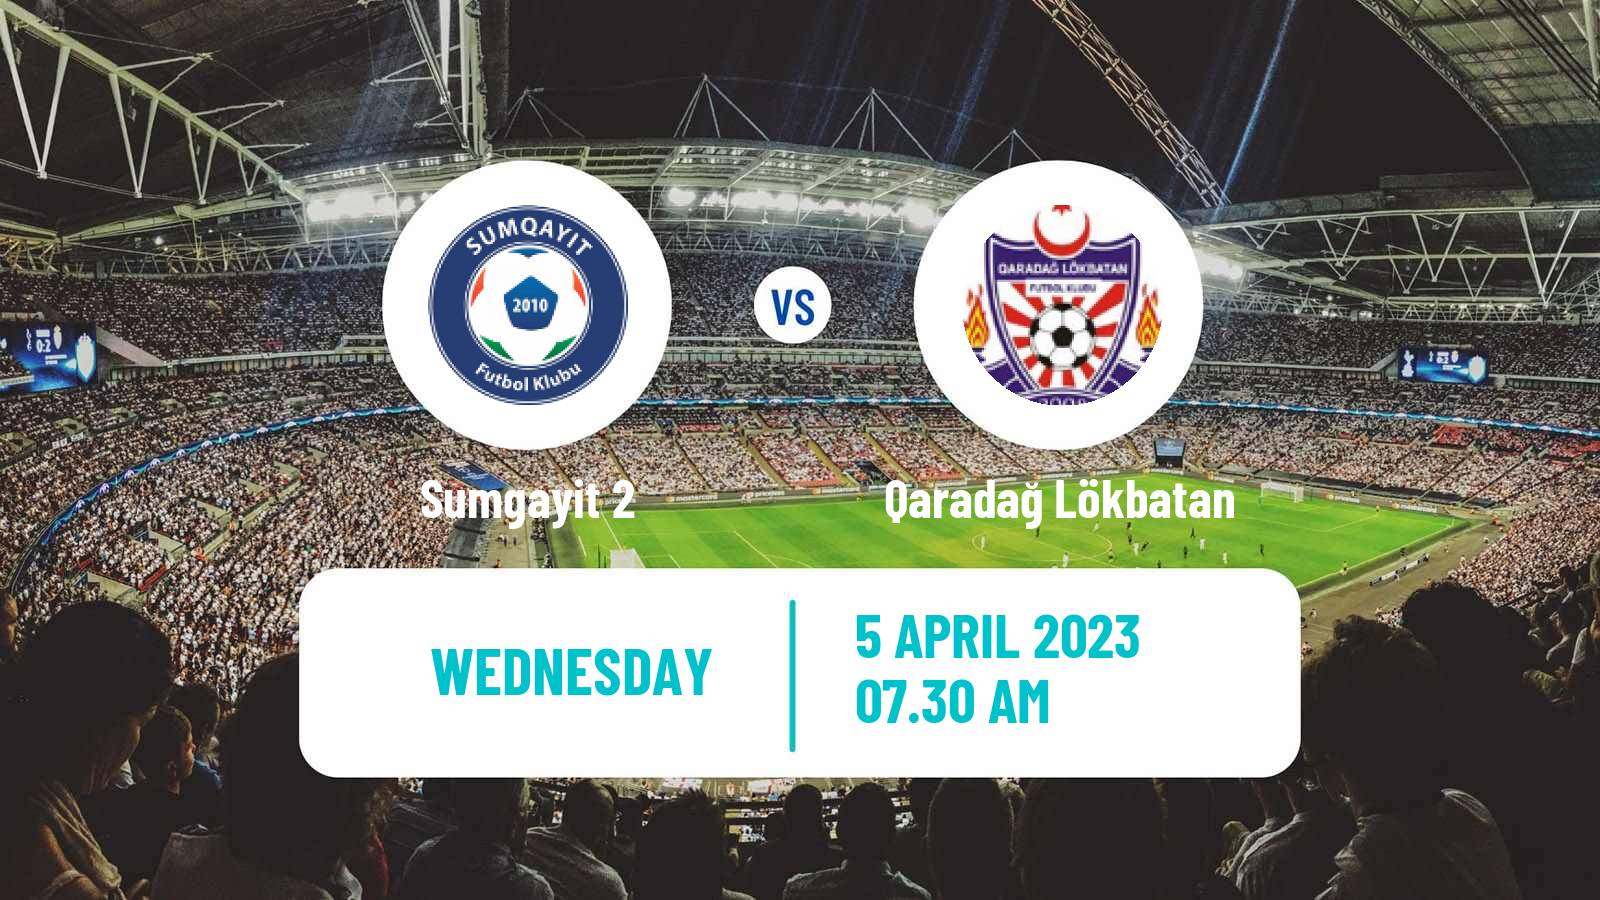 Soccer Azerbaijan First Division Sumgayit 2 - Qaradağ Lökbatan